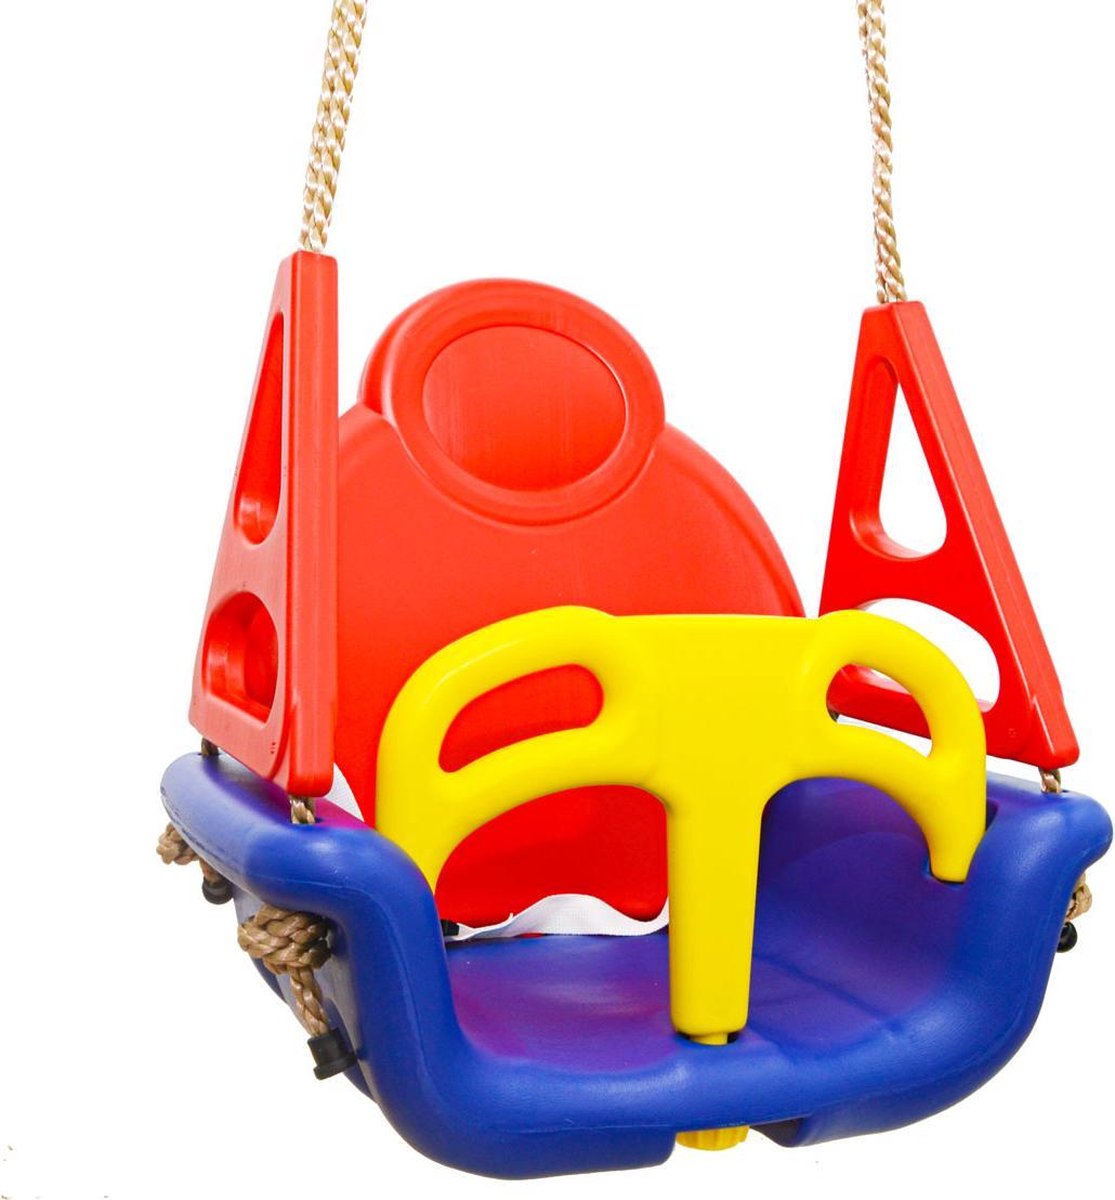 Balançoire pour bébé, balançoire pour bébé pour enfants 3 en 1, siège  balançoire pour bébé avec dossier et ceinture de sécurité, 6 mois à 6 ans,  balançoire extérieure intérieure (bleu 3 en 1)